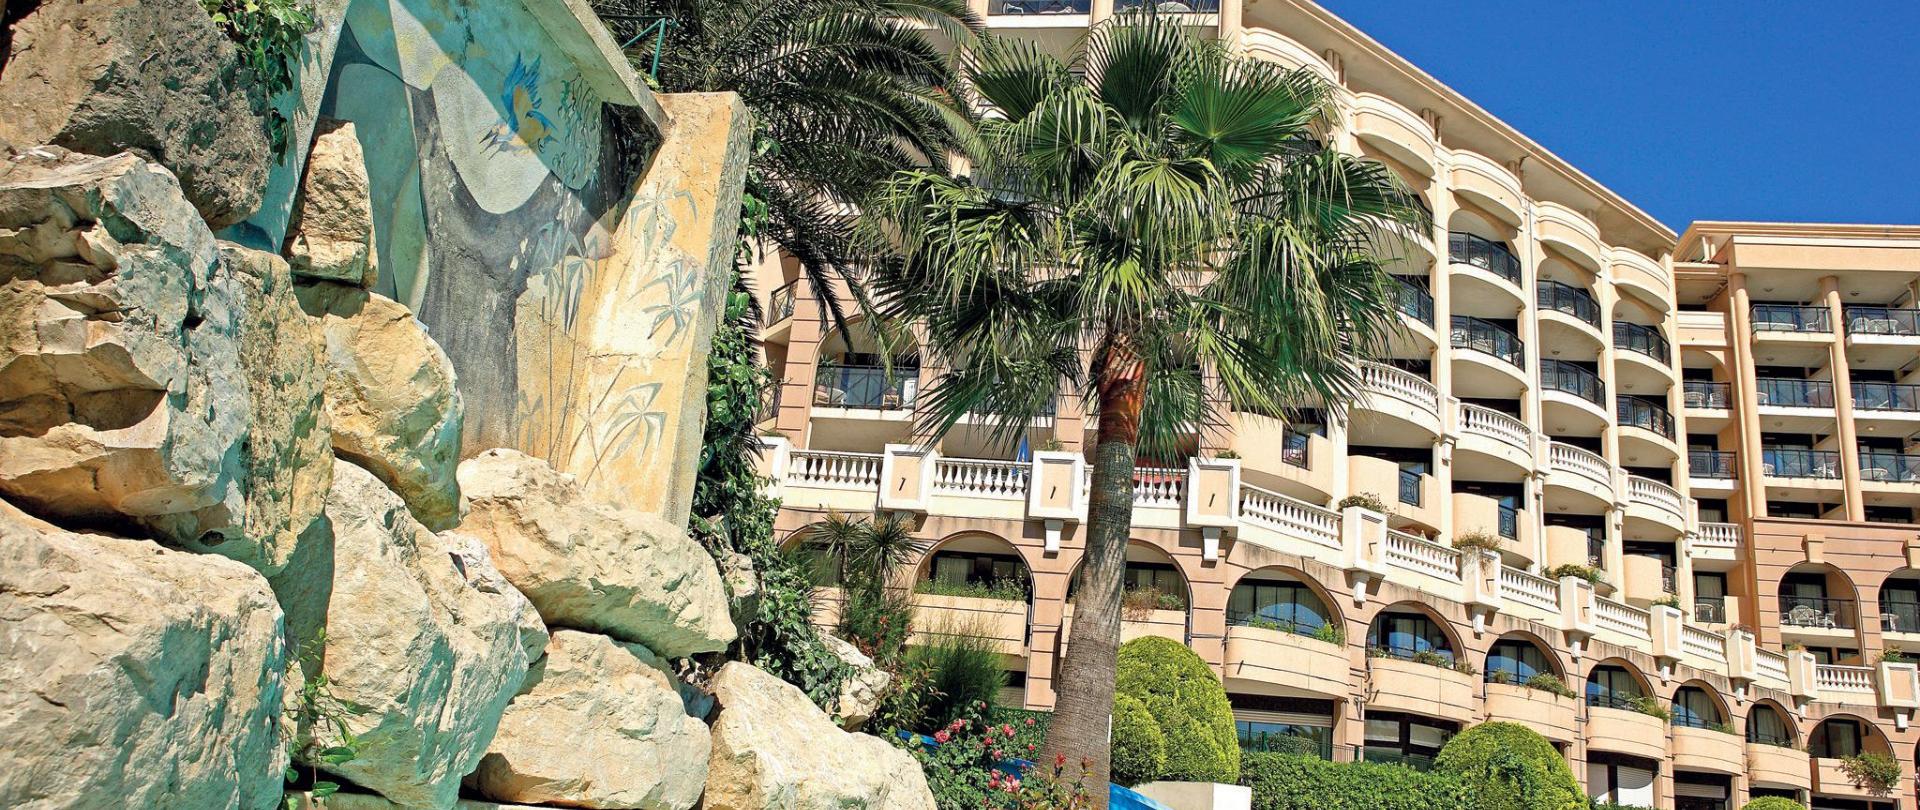 Hotel-La Palme D'Azur-Cannes-Verrerie.jpg